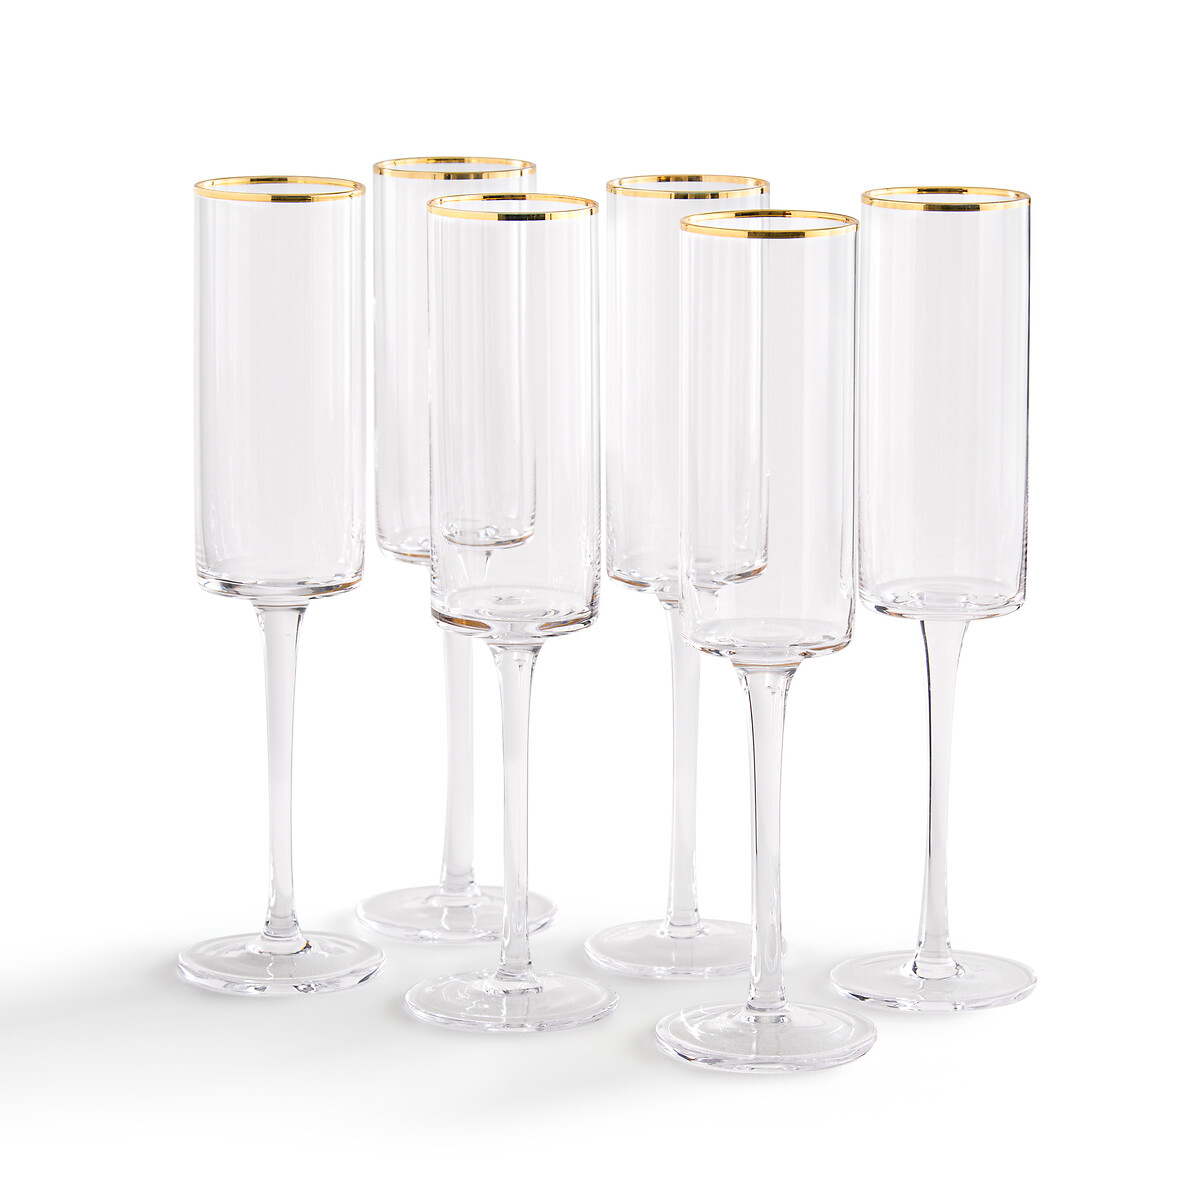 Комплект из 6 бокалов для Шампанского Coblice единый размер золотистый